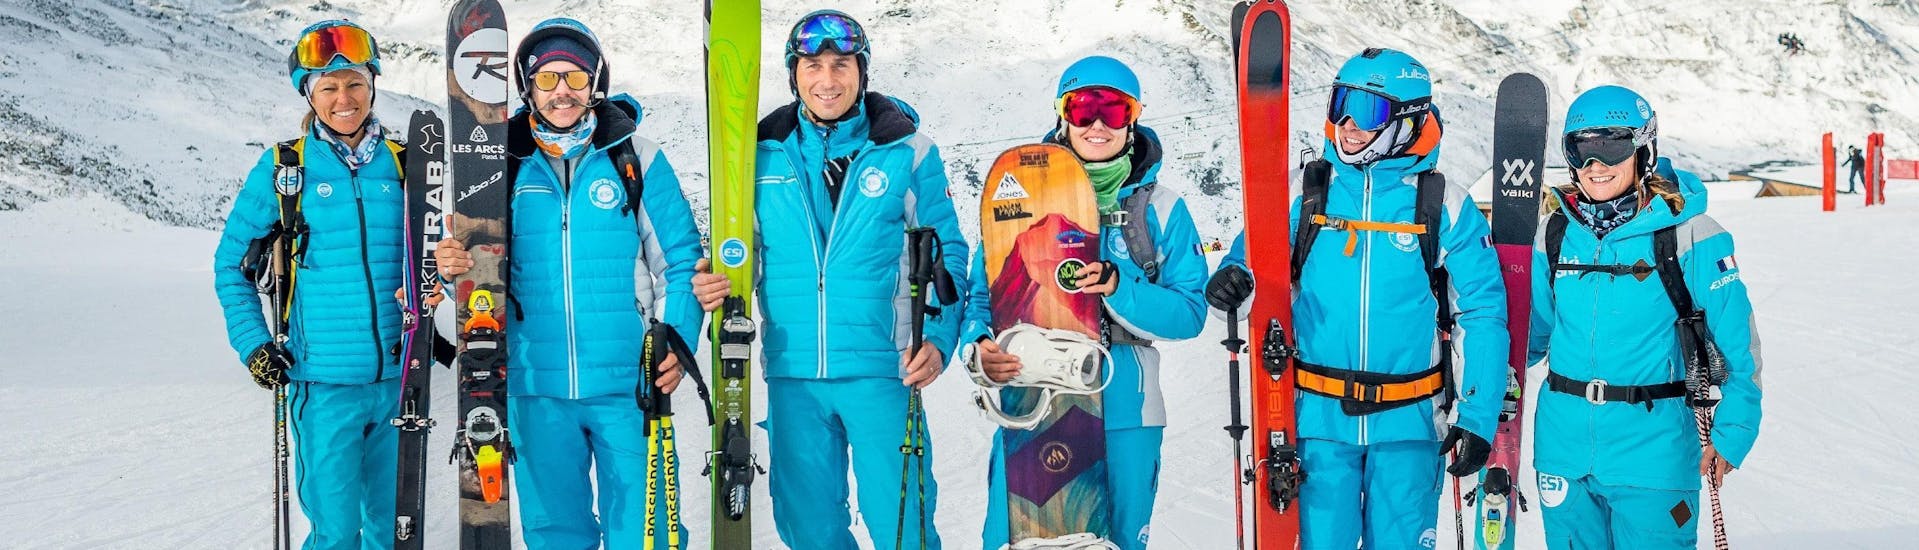 Los monitores de ESI Alpe d'Huez - European Ski School se preparan para recibir a los participantes de las clases de snowboard (a partir de 8 años) para principiantes.